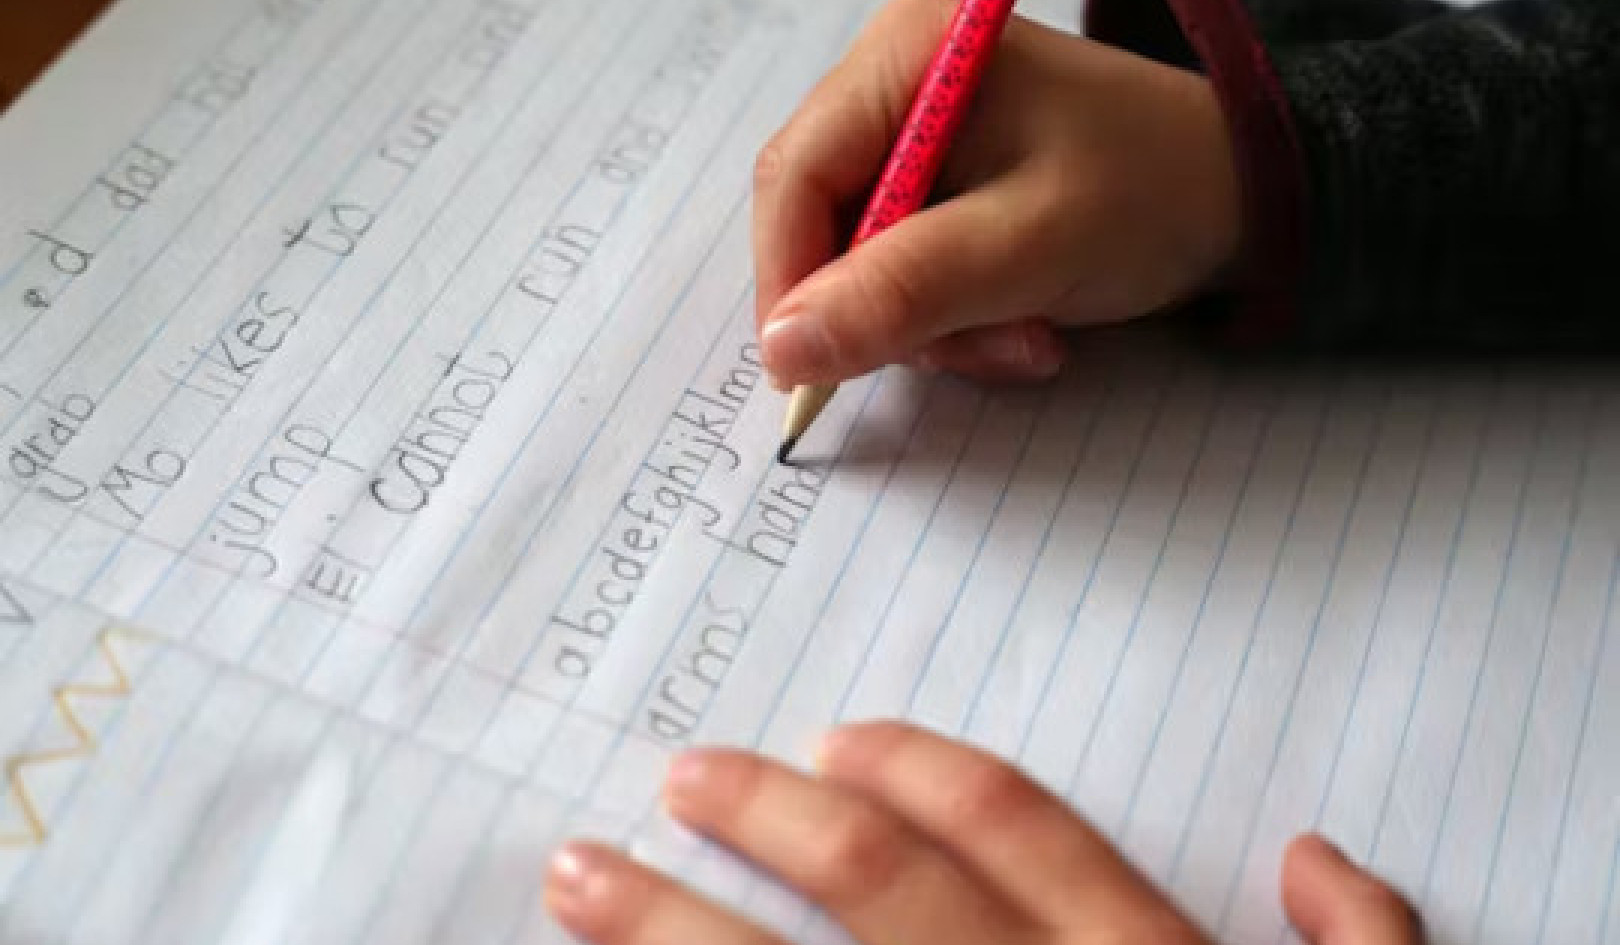 La importancia de escribir a mano: 5 razones por las que los niños todavía necesitan aprender a escribir a mano